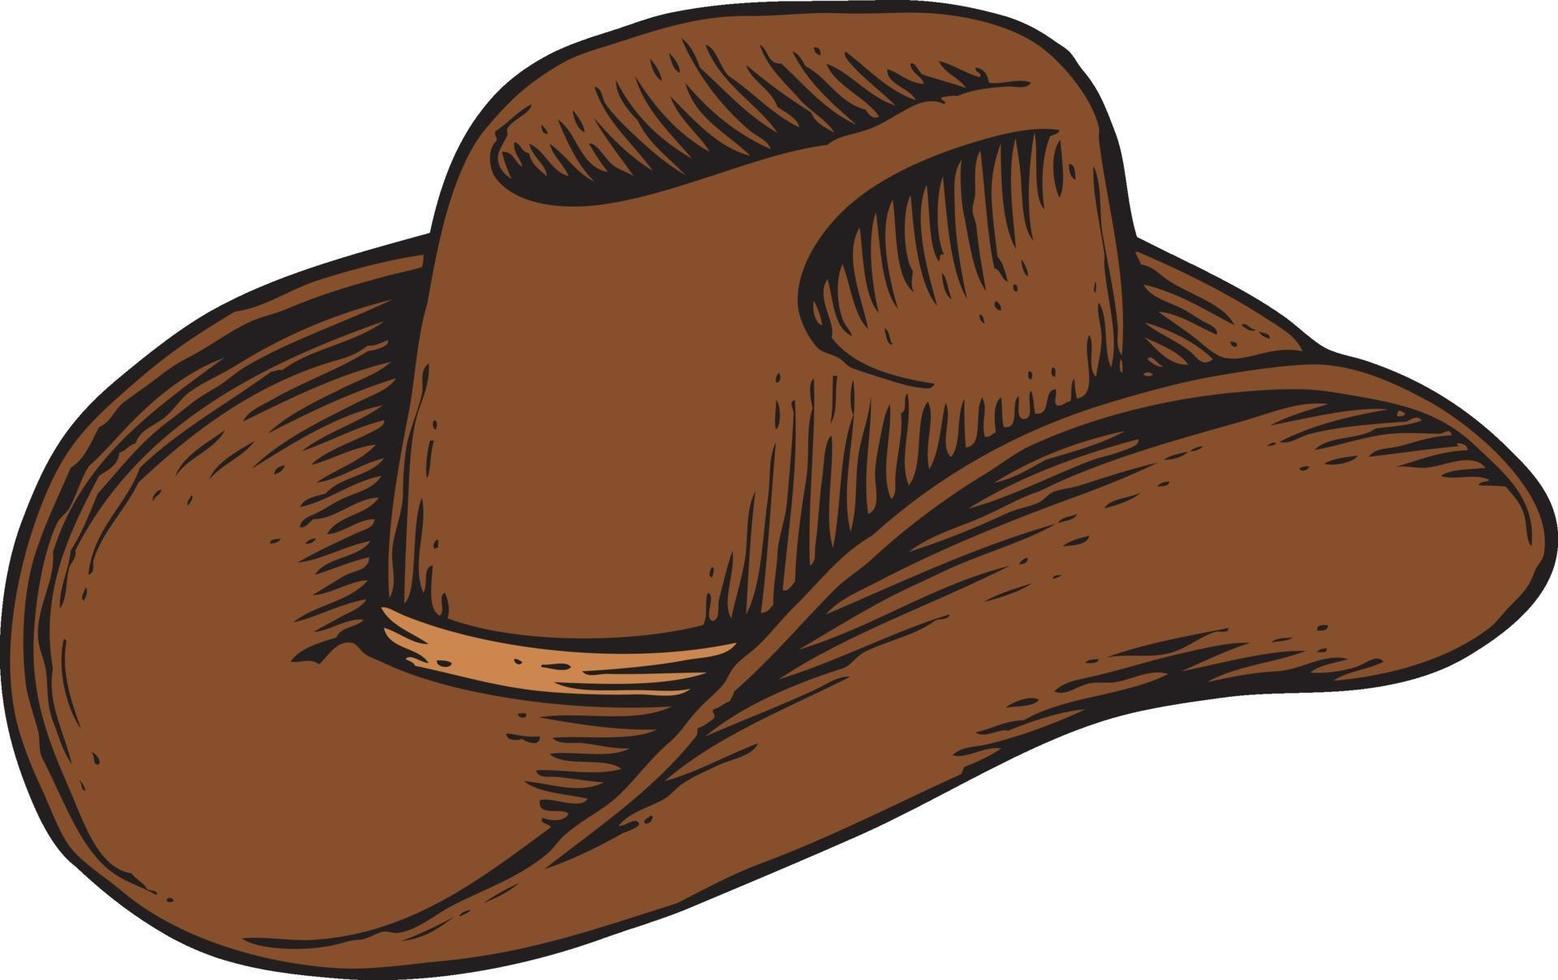 chapéu de cowboy - vintage gravado vetor